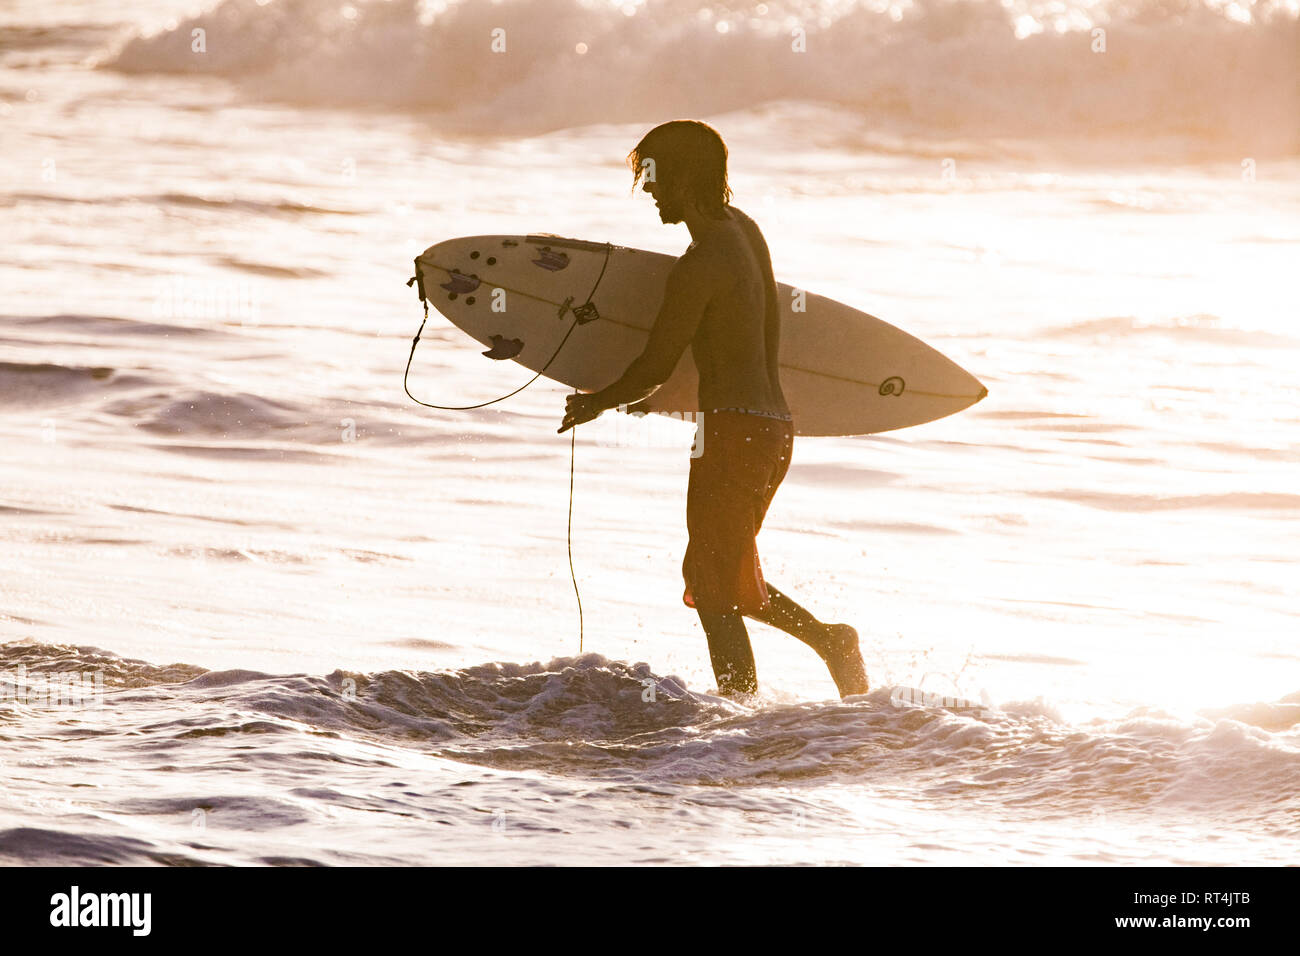 Professionelle surfer Surfen im weltklasse Wellen von Fernando de Noronha, einer Insel an der Nordküste von Brasilien Stockfoto